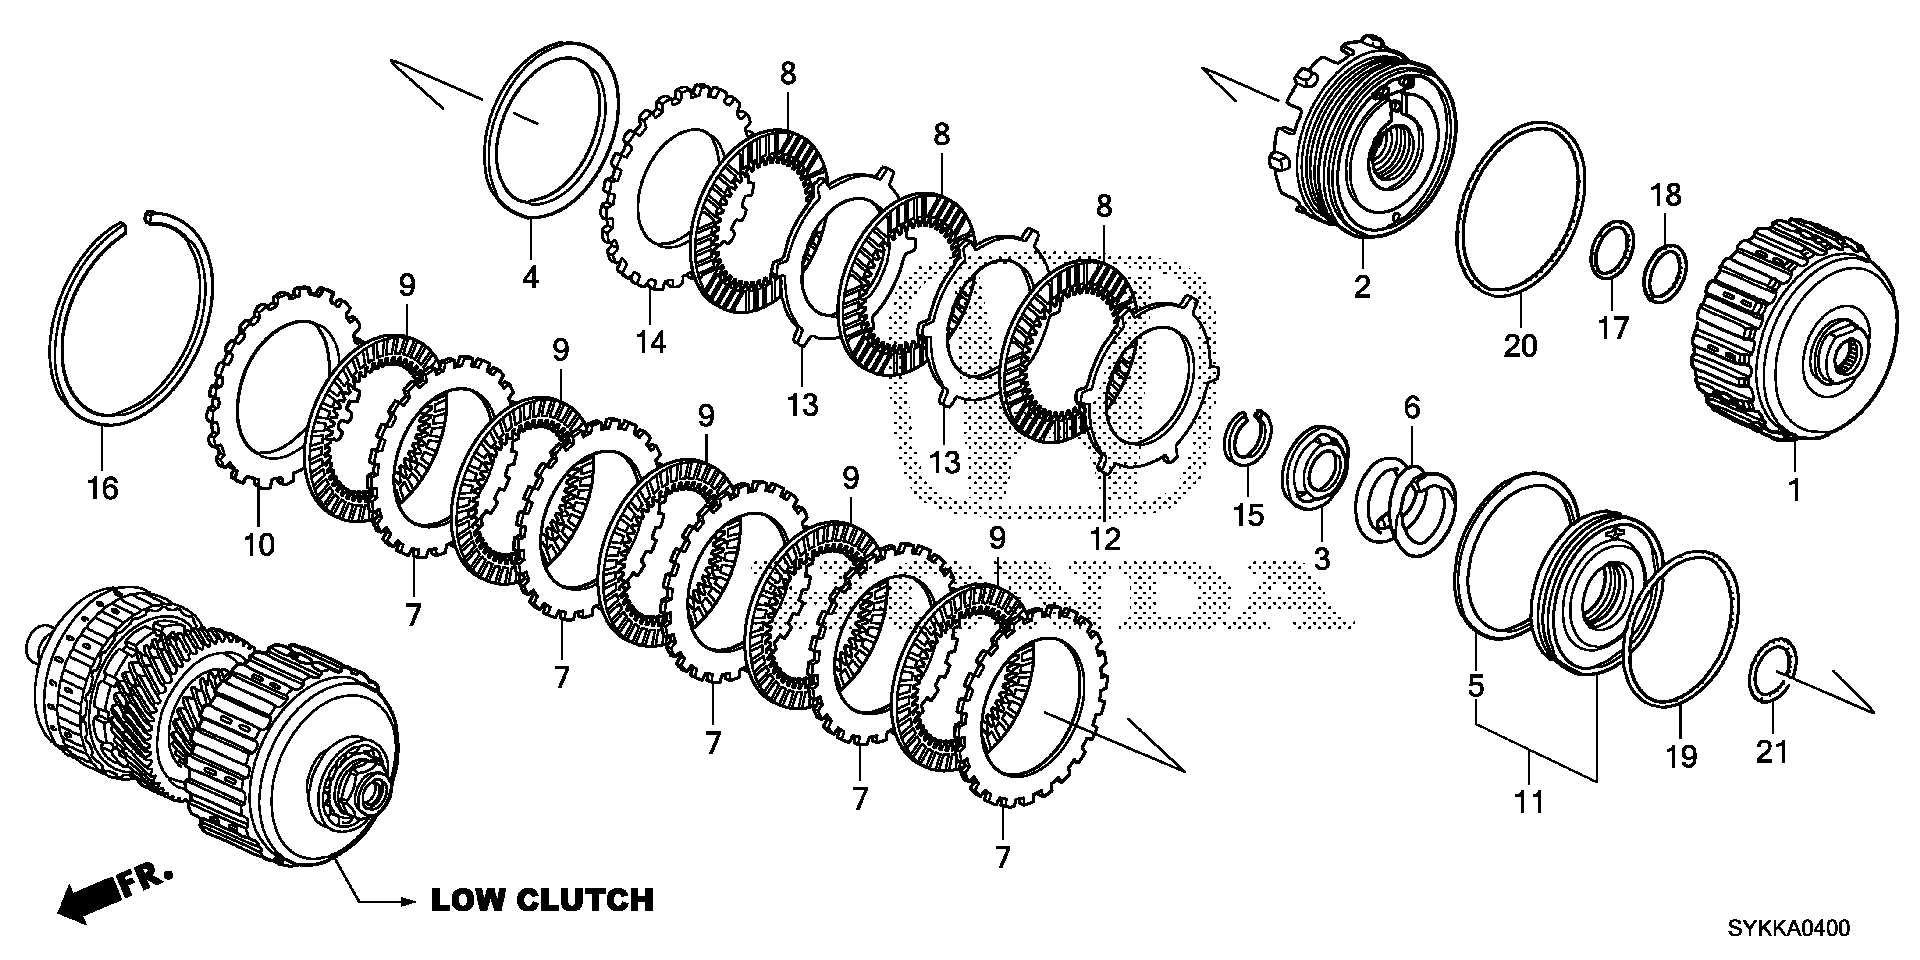 CLUTCH( LOW)(V6)